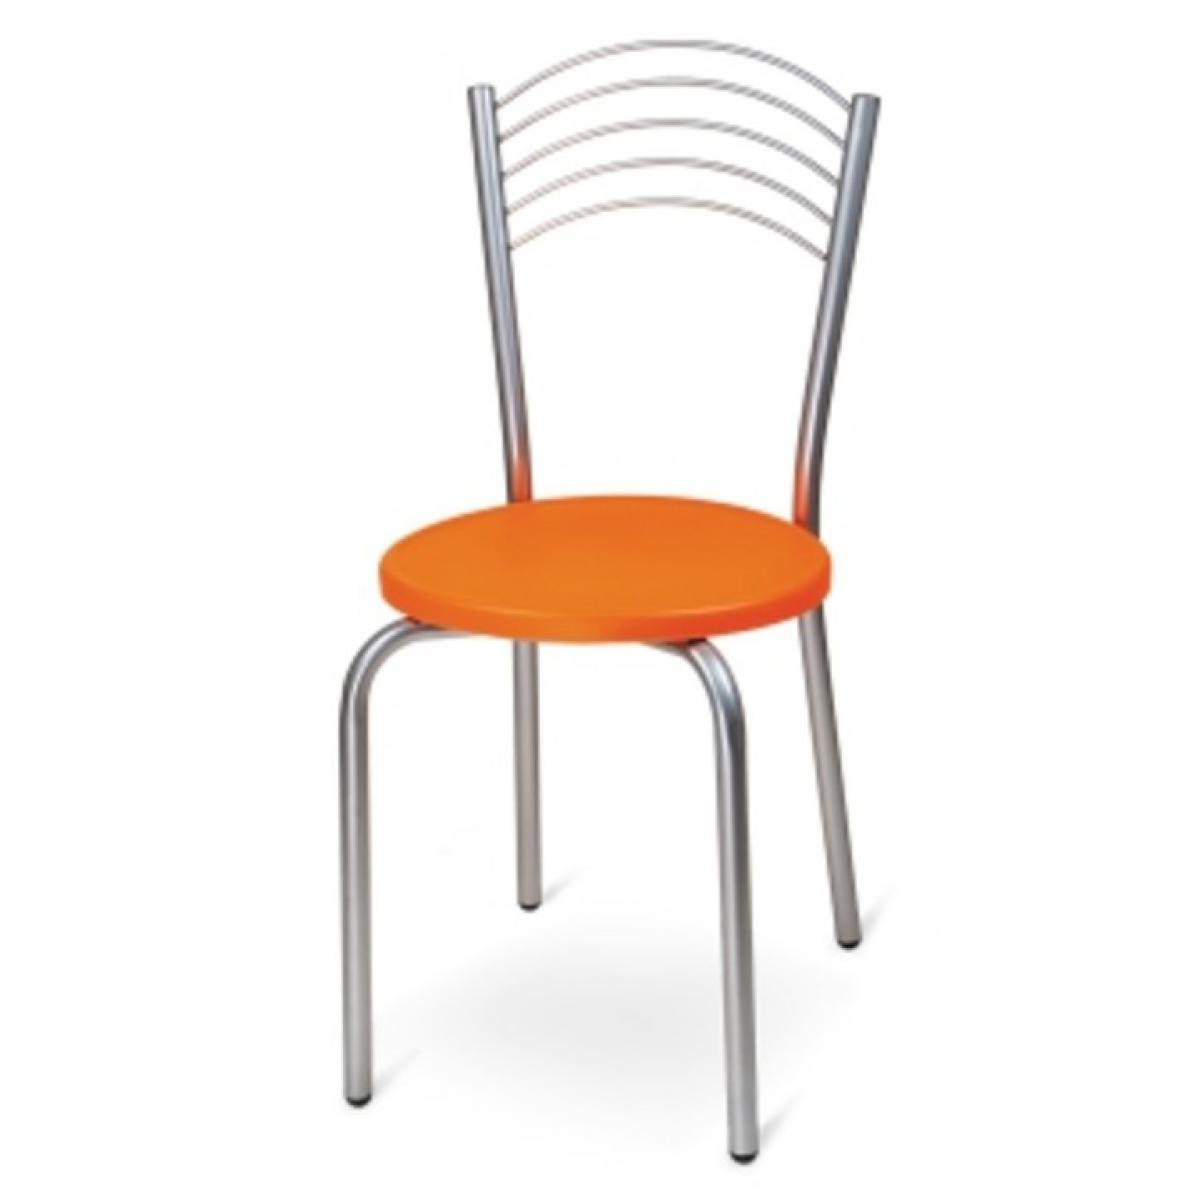 Fleda Trading - Lot de 6 Chaises Empilables en métal pour Restaurants Orange Taille 40x40x87 - Chaises